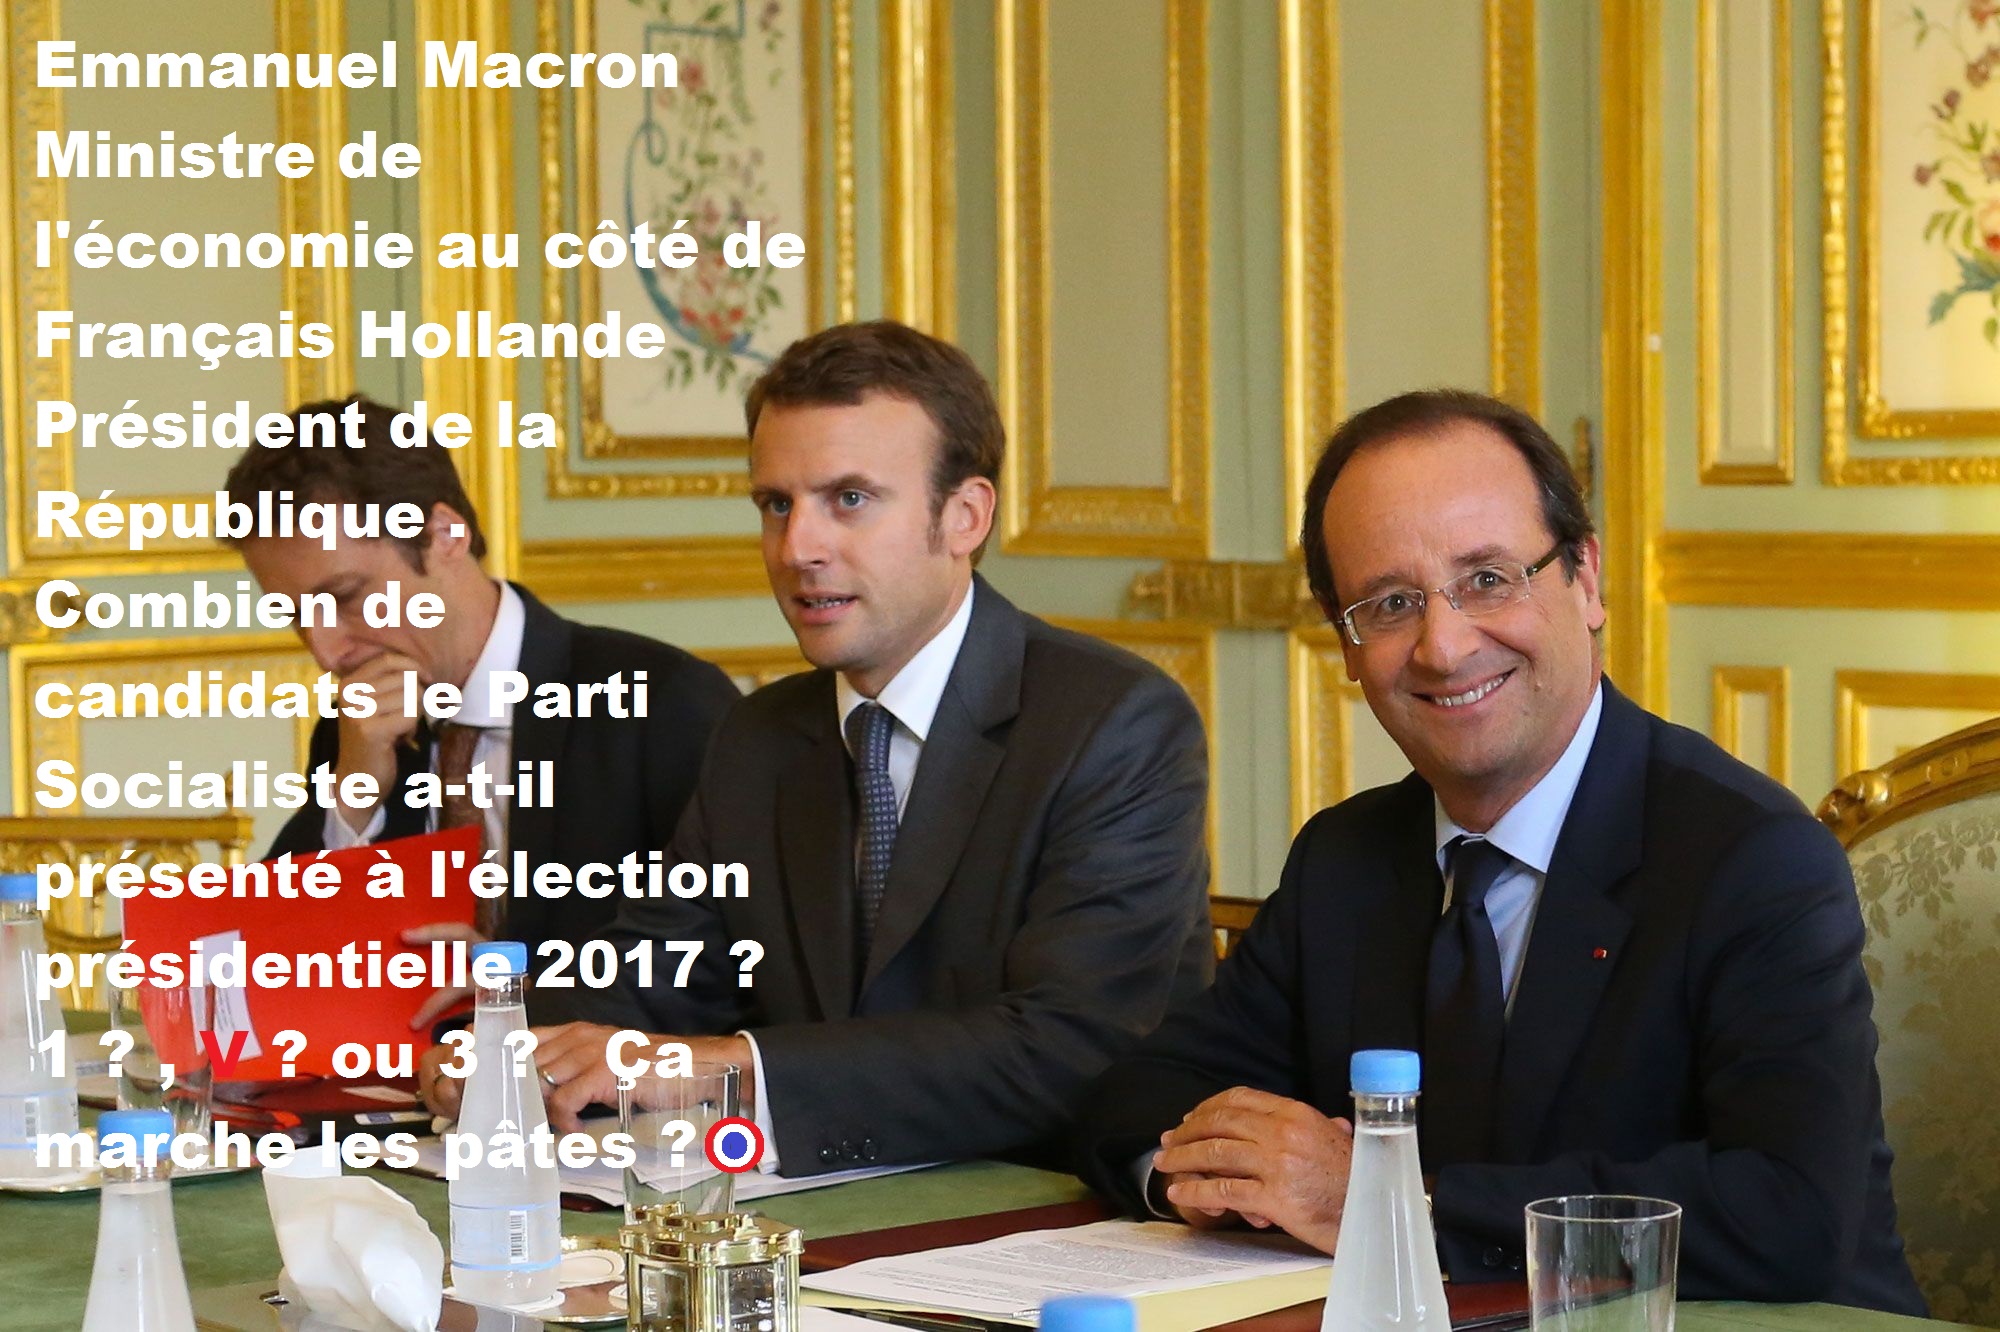 KKxkF2YOElK_Emmanuel-Macron-en-12-dates-clefs-François-MACRON-socialiste-020-10-09-Emmanuel-Macron-en-12-dates-clefs-2017-le-8-mai-francois-Hollande.jpg